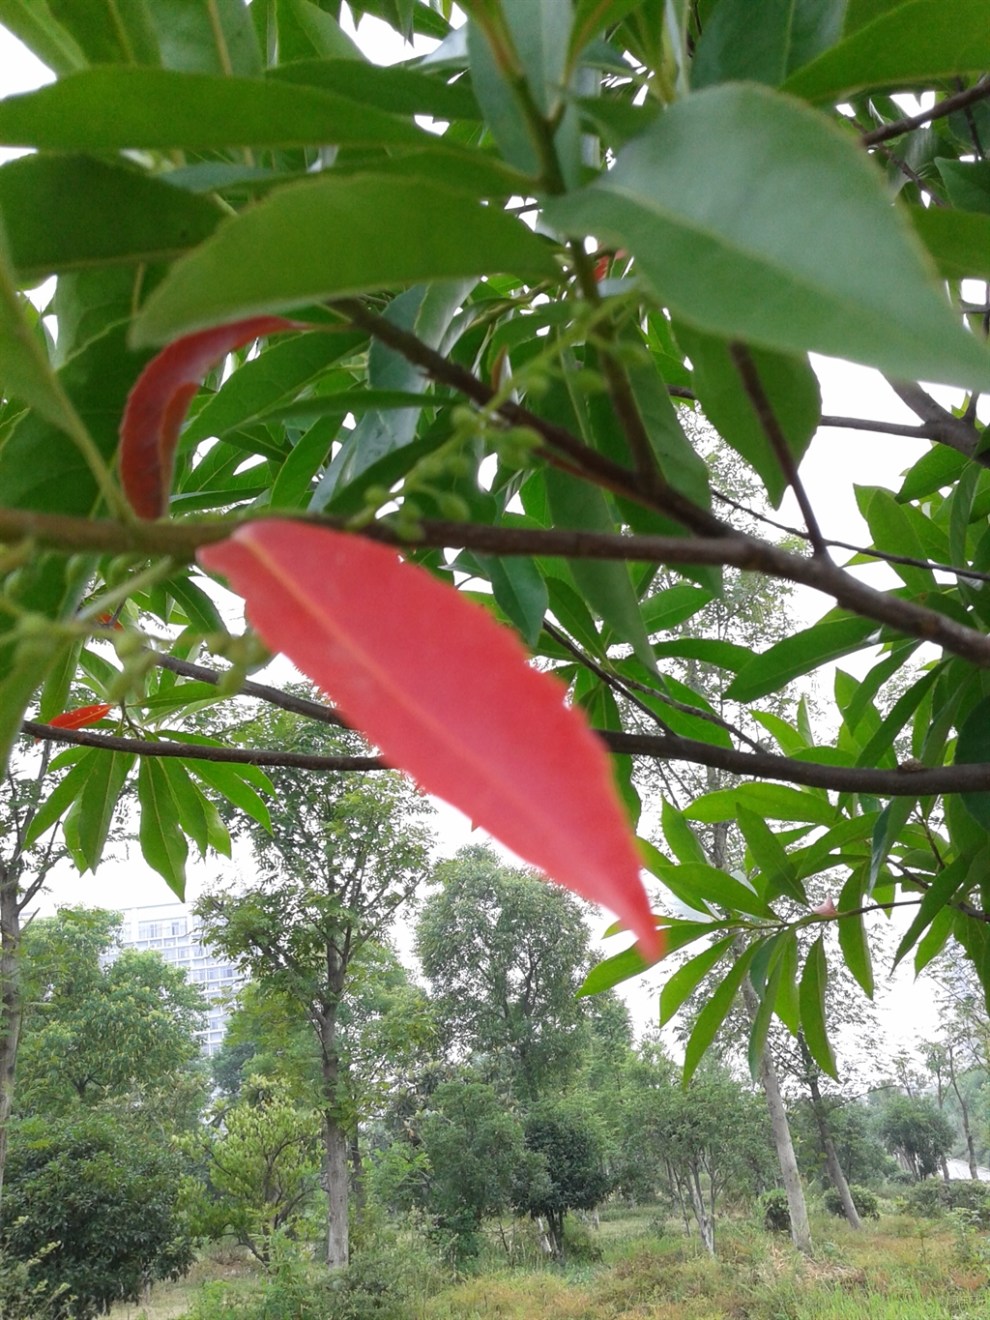 【拍一下公园绿化红叶子树!】_安徽论坛图片集